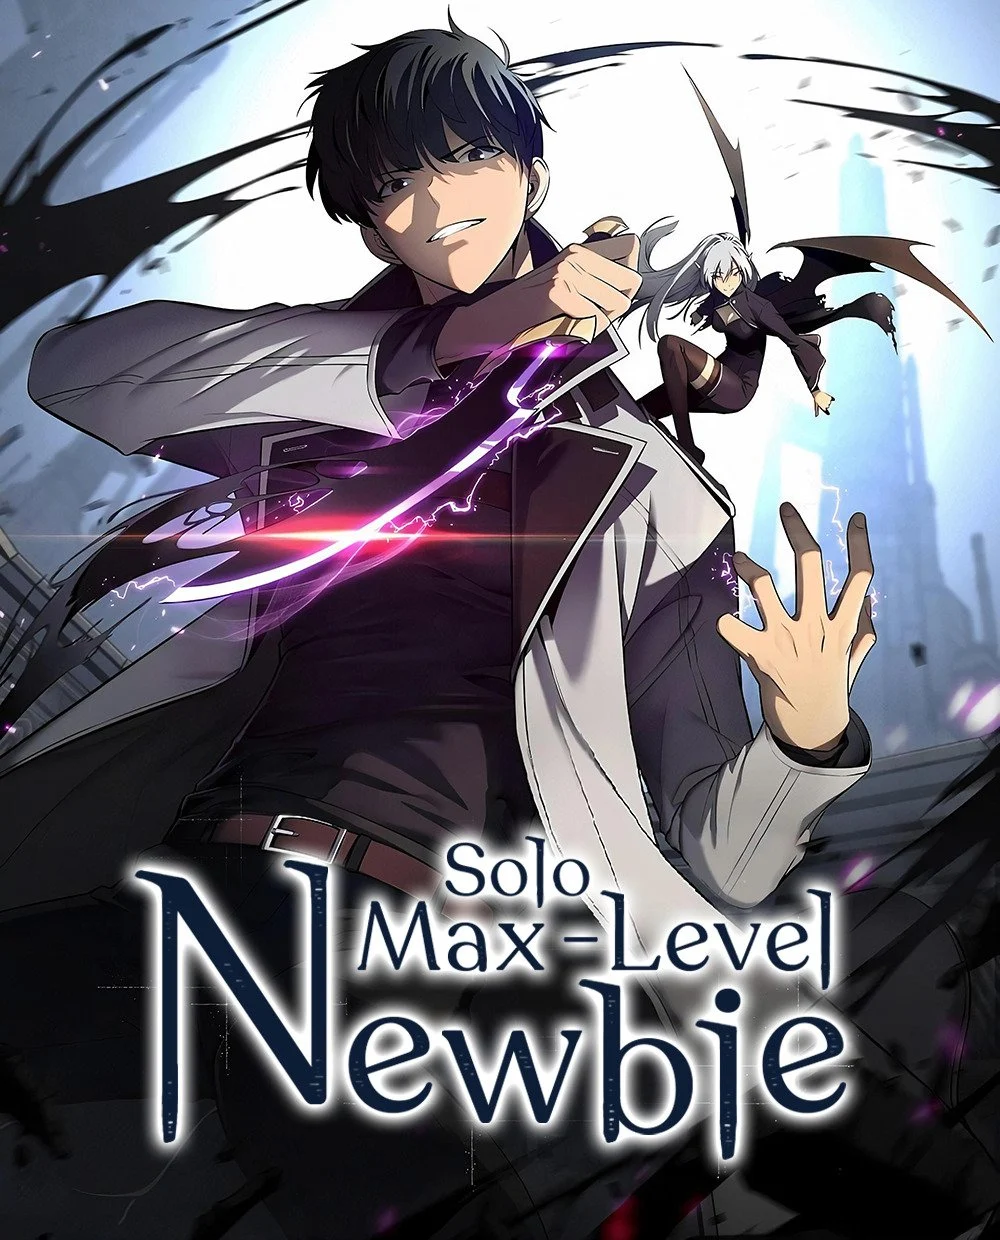 I m The Max Level Newbie Solo Max-Level Newbie | Asura Scans Wiki | Fandom